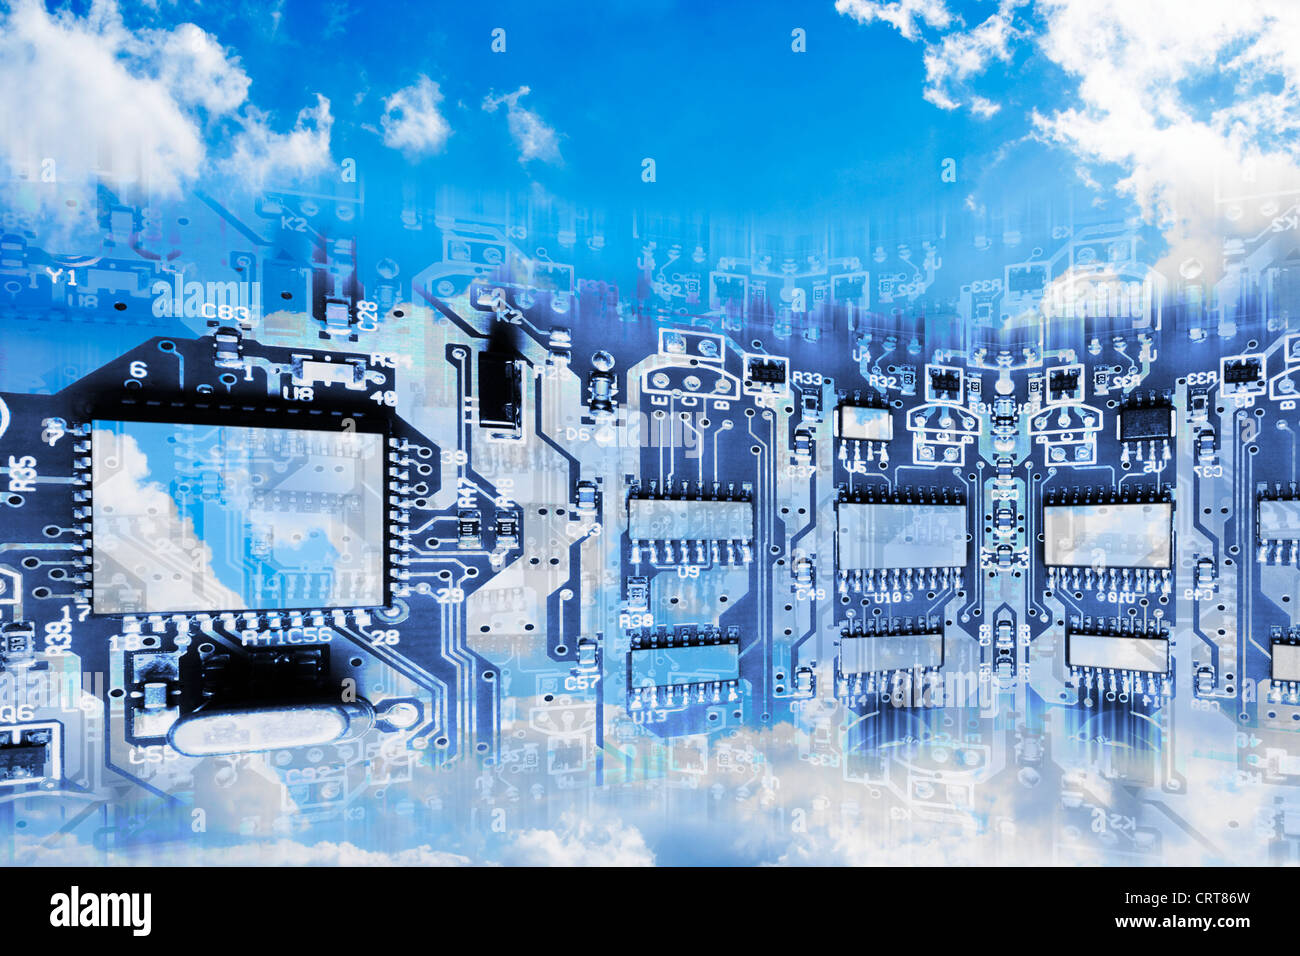 Platine überlagert bewölkten Himmel - Konzeptbild von Cloud Computing Stockfoto